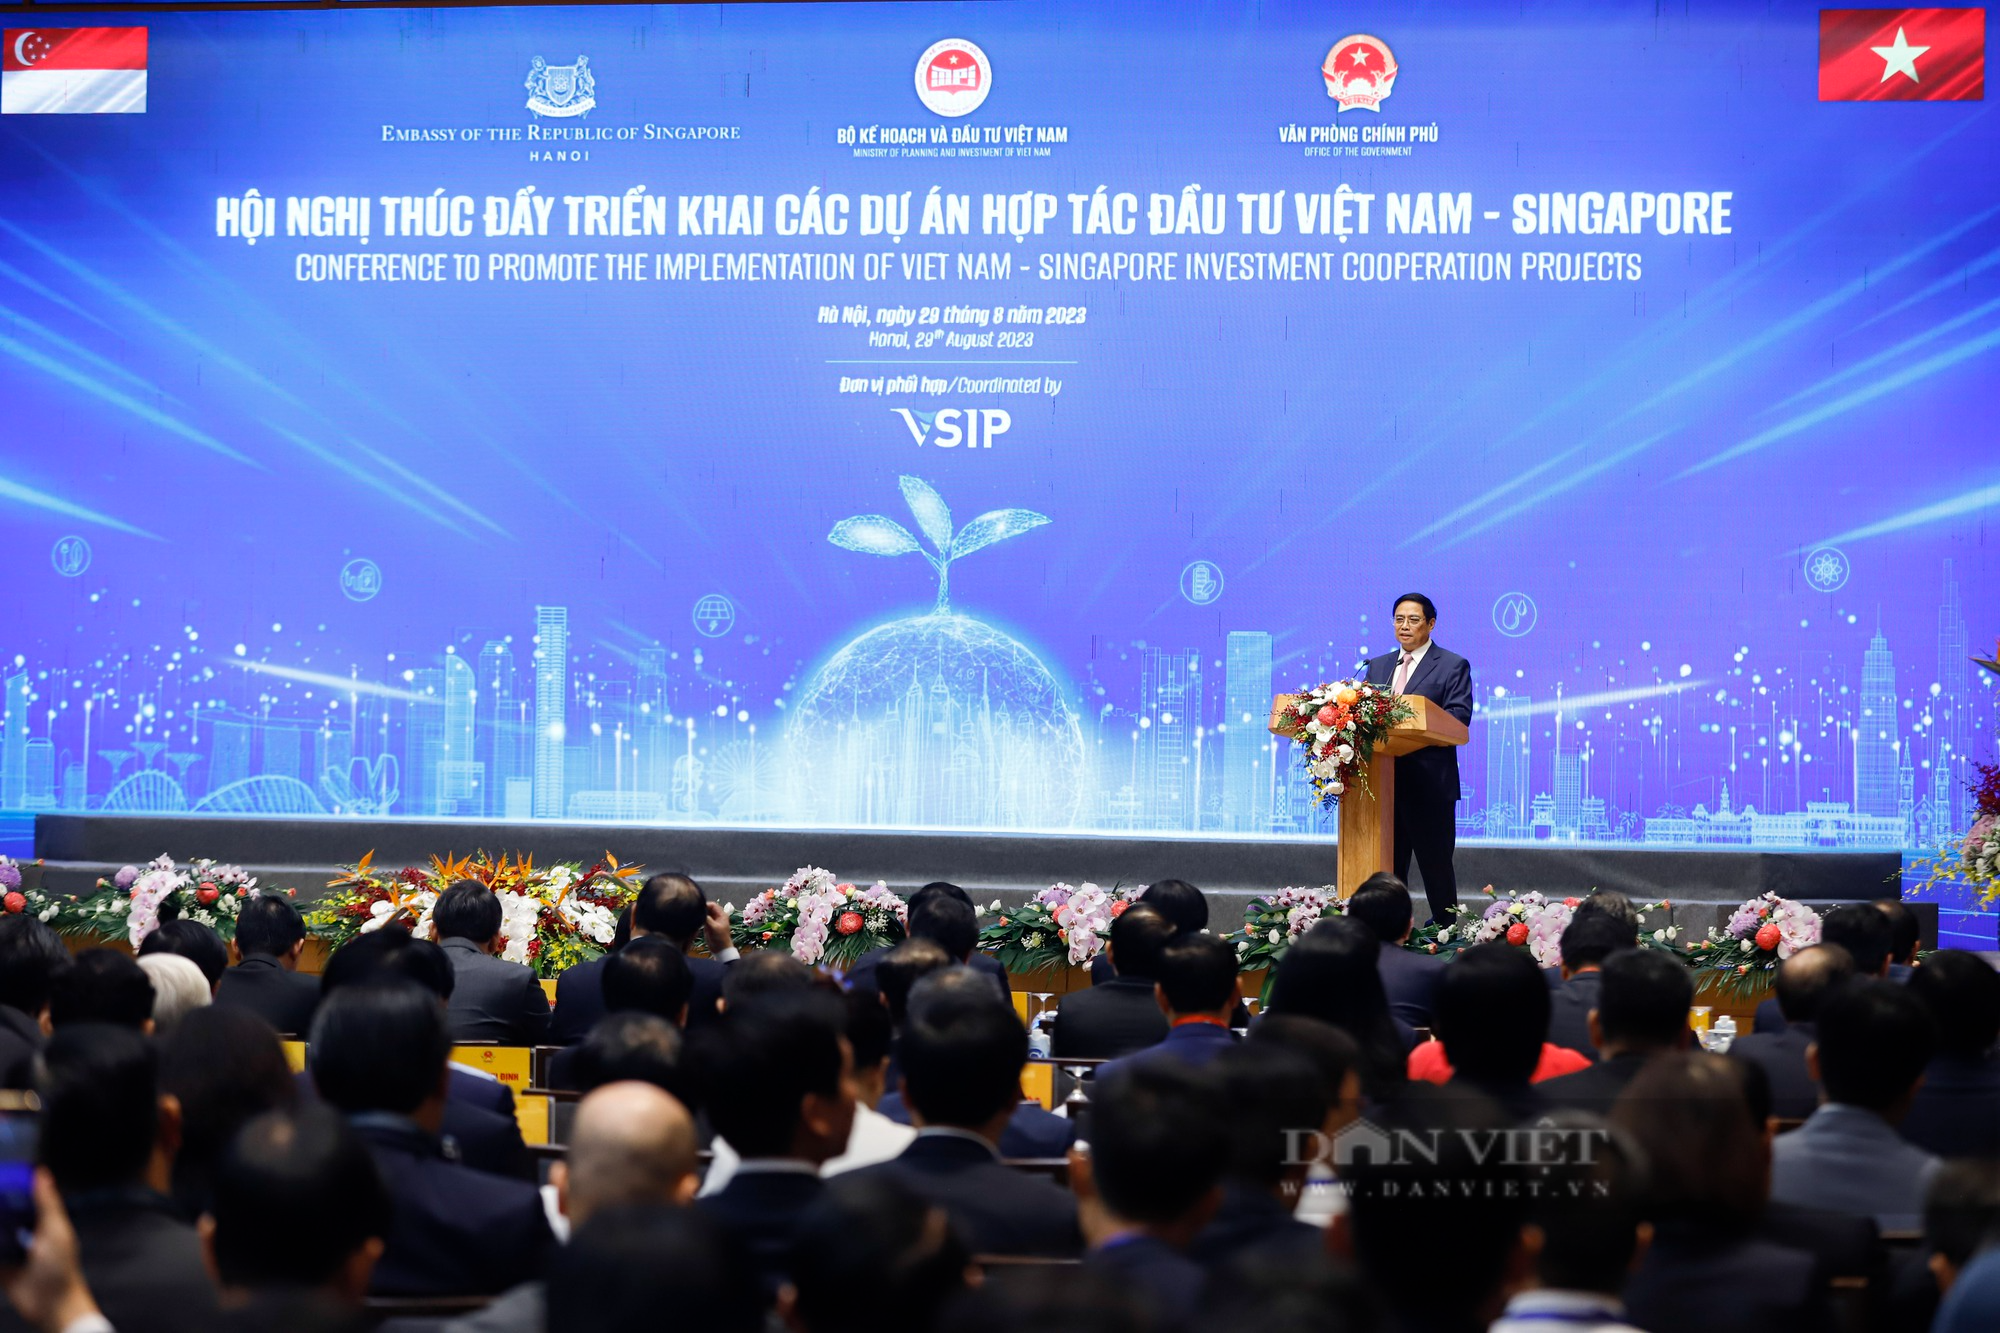 Thủ tướng Phạm Minh Chính và Thủ tướng Lý Hiển Long dự hội nghị thúc đẩy các dự án hợp tác Việt Nam-Singapore - Ảnh 1.